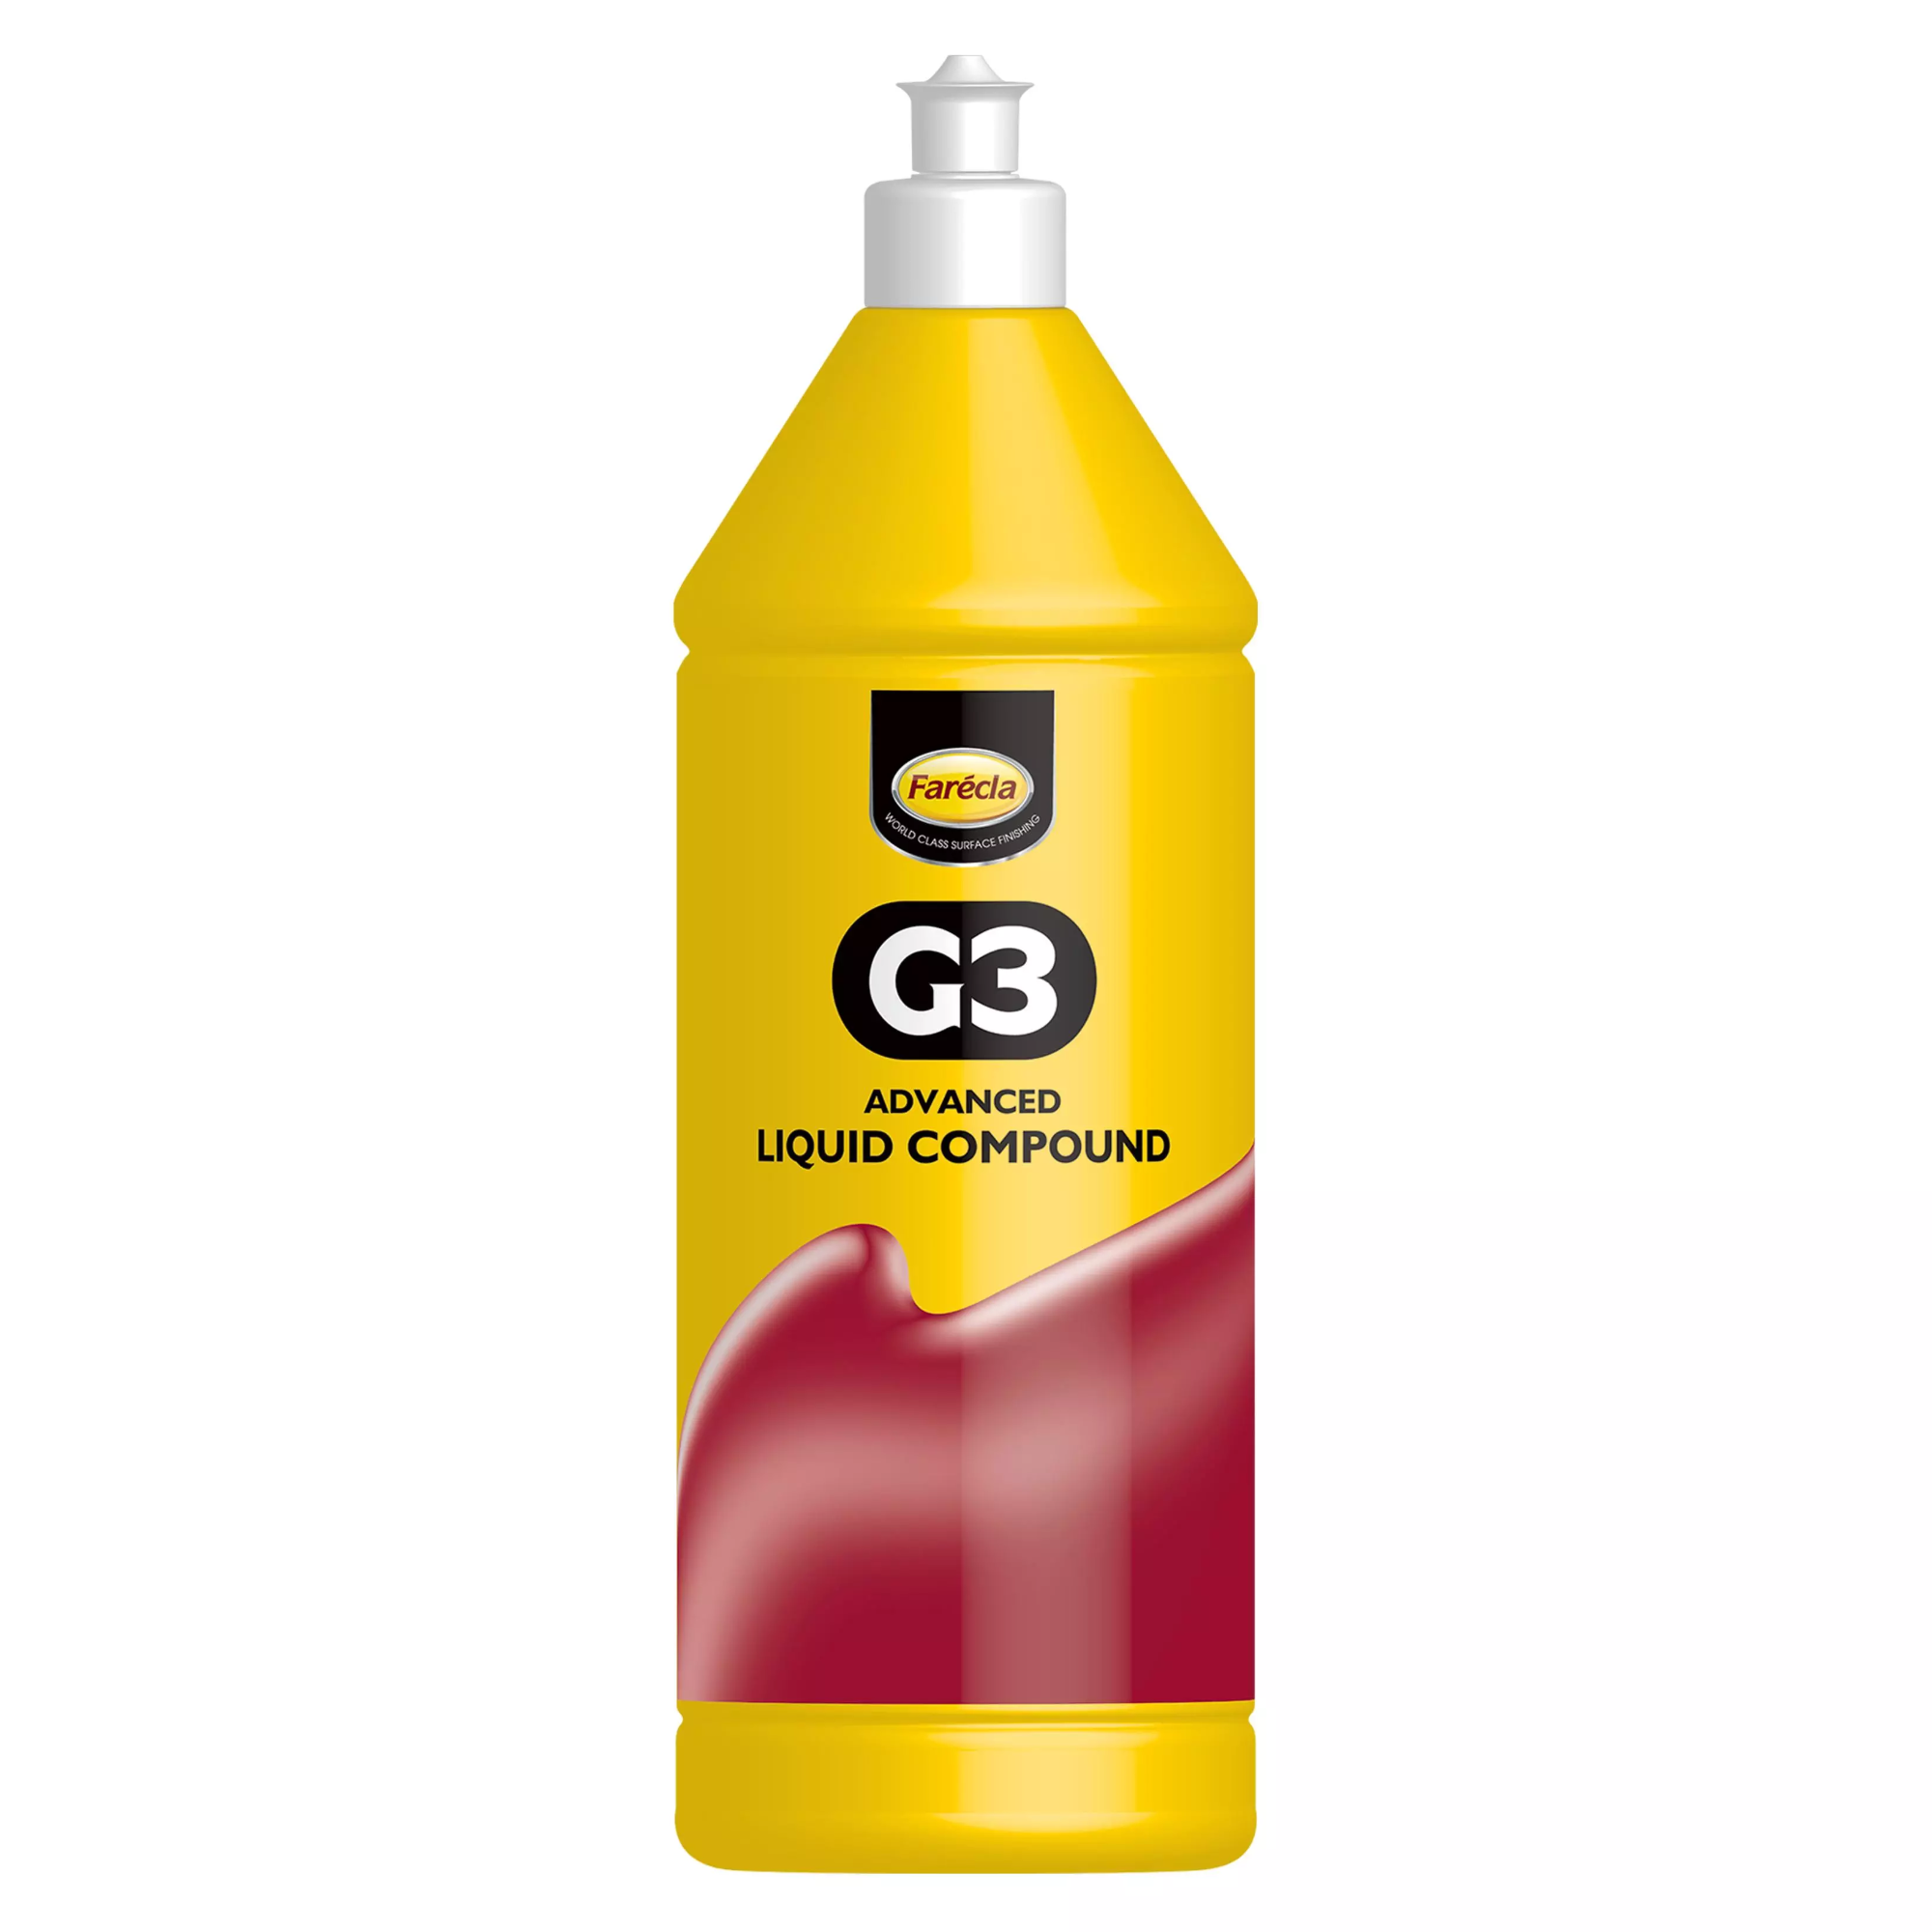 Farecla G3 Advanced Liquid Compound 1L